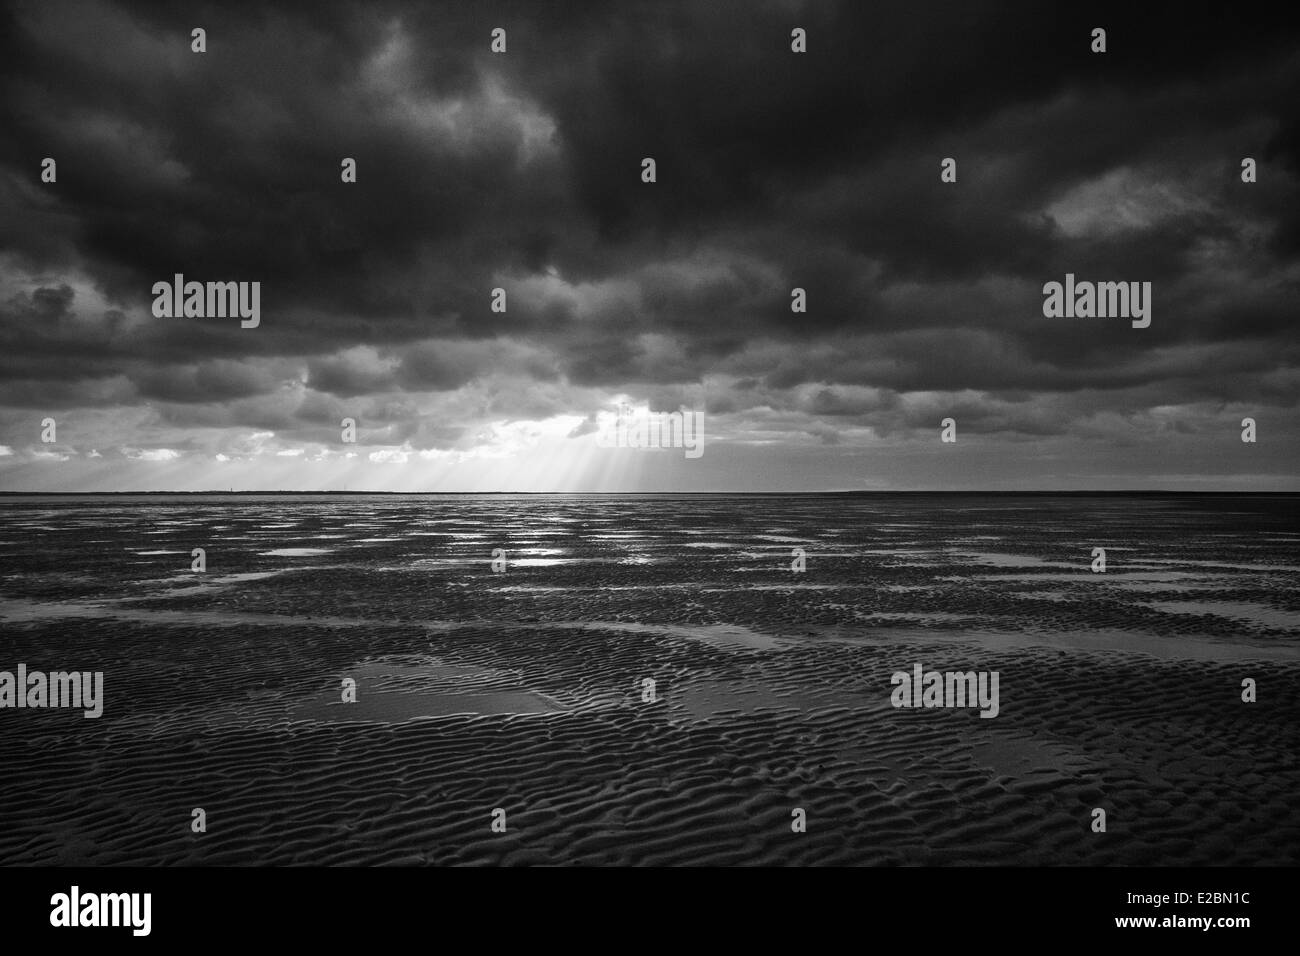 Classico bianco e nero immagine fatta durante una passeggiata a bassa marea chiamato wadlopen a Rottumeroog Foto Stock